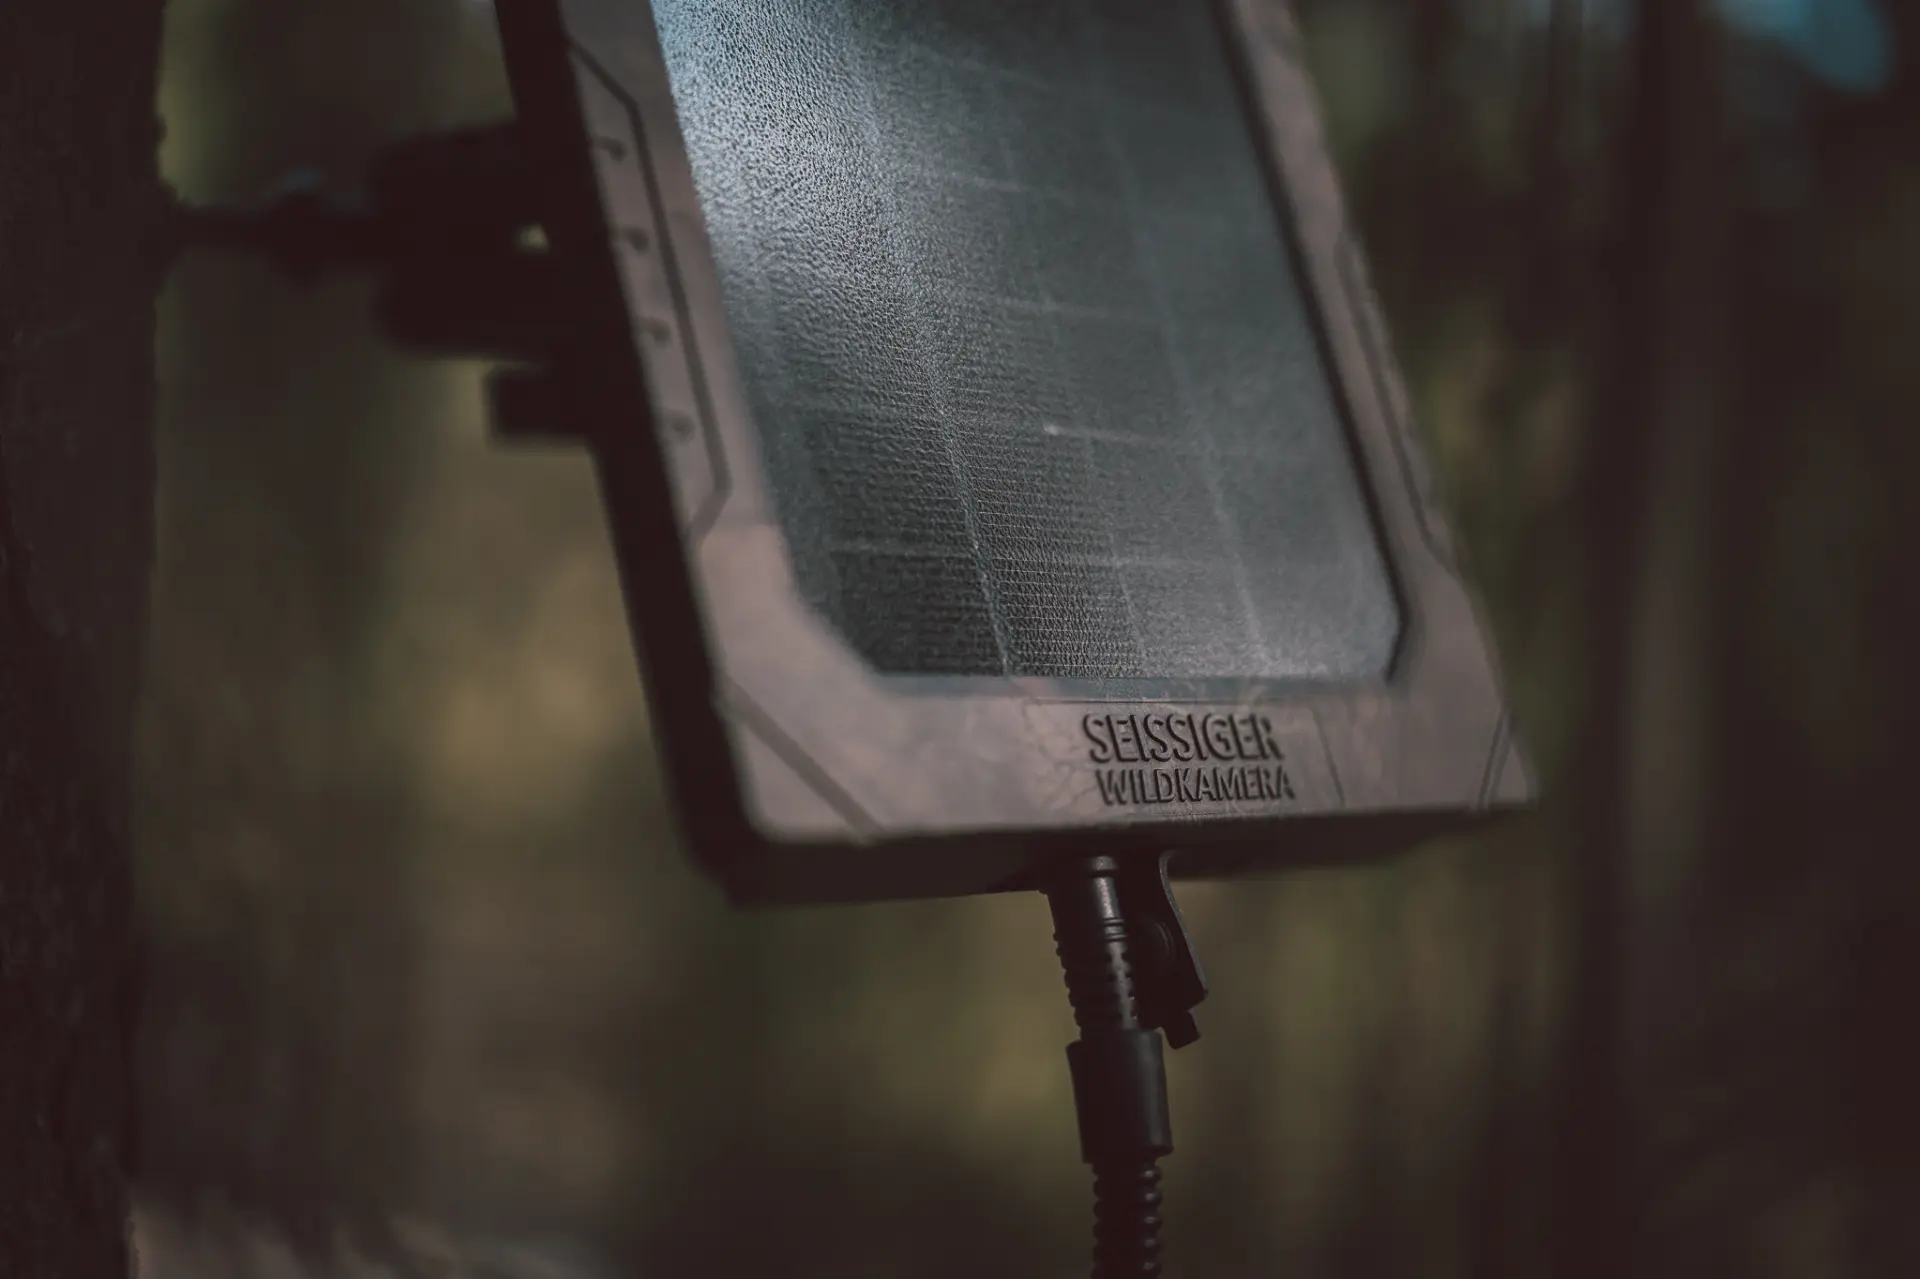 SEISSIGER Solarpanel für Wildkameras